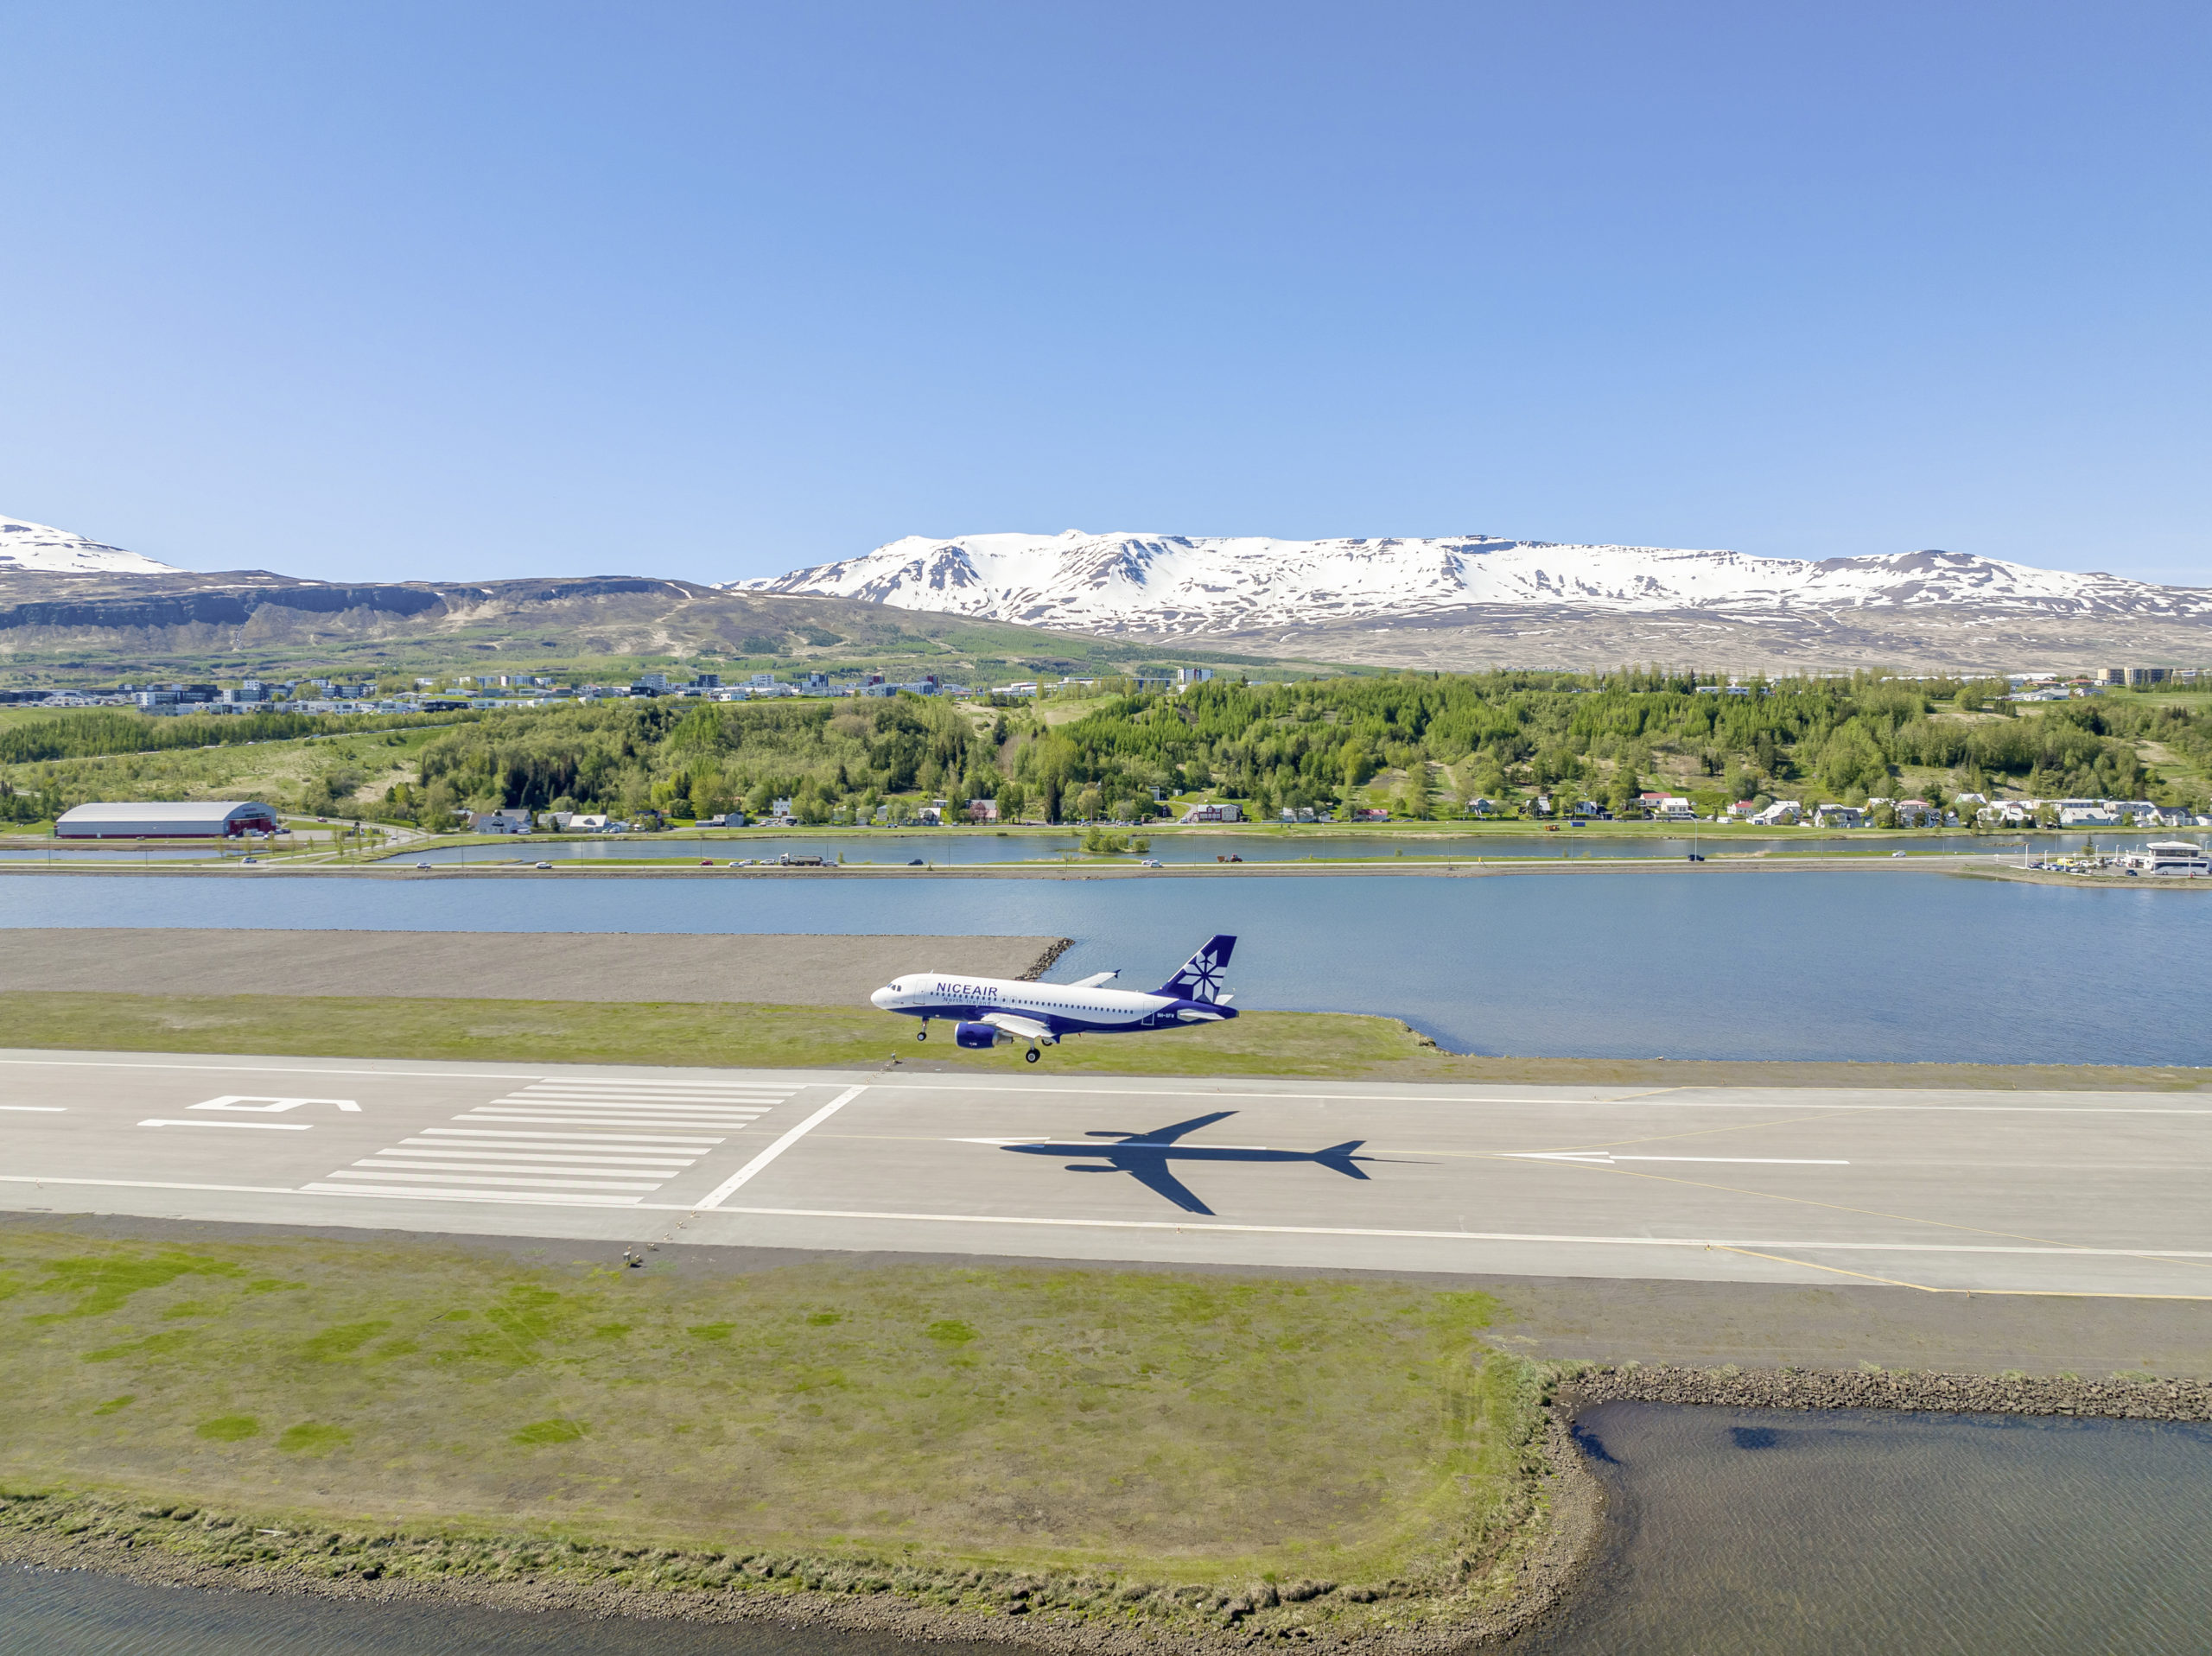 Touristen, die die reizvolle Landschaft im Norden Islands erleben wollen, können nun direkt in Akureyri ankommen.